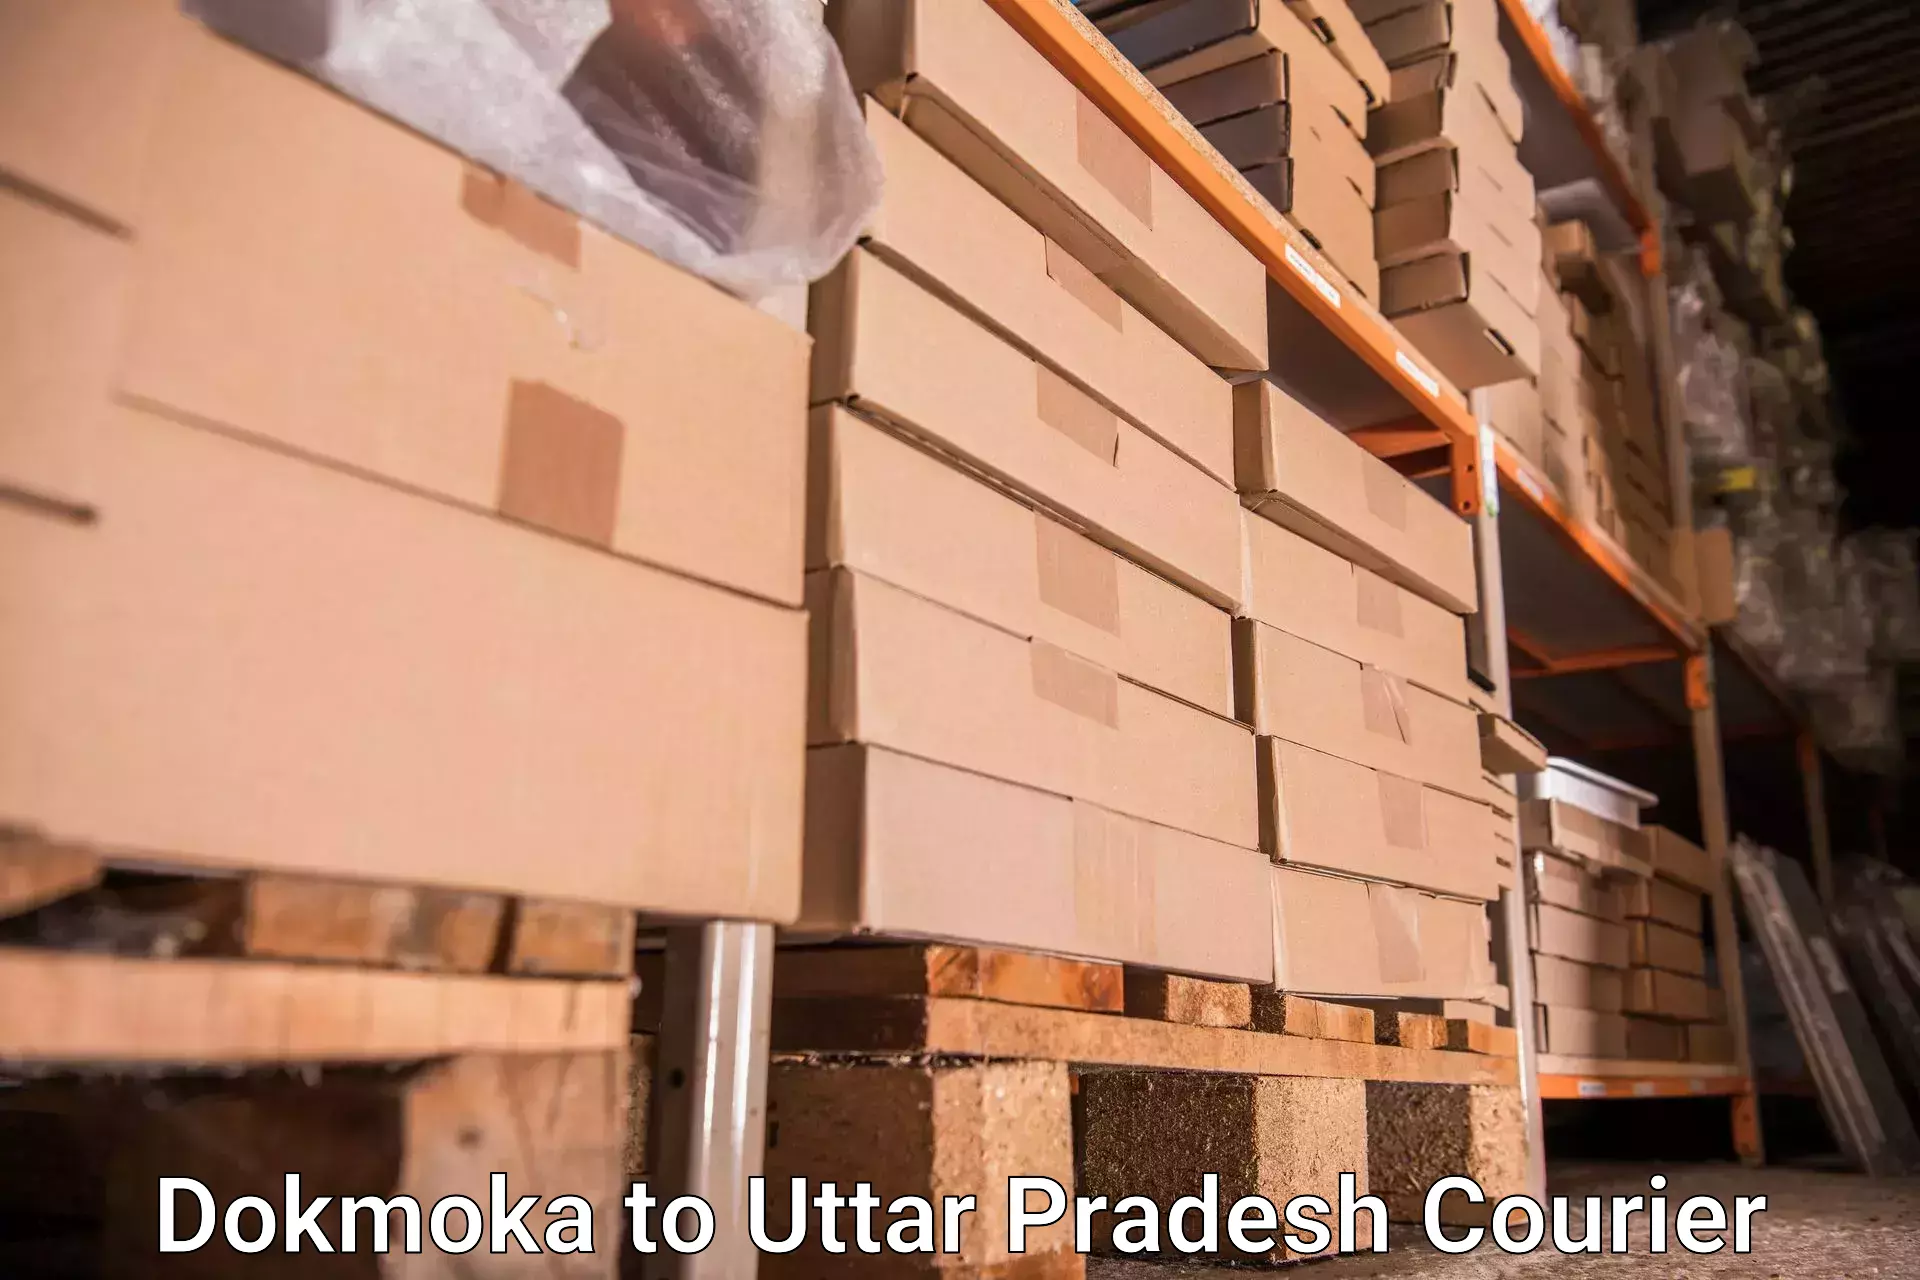 Luggage shipment processing Dokmoka to Dohrighat